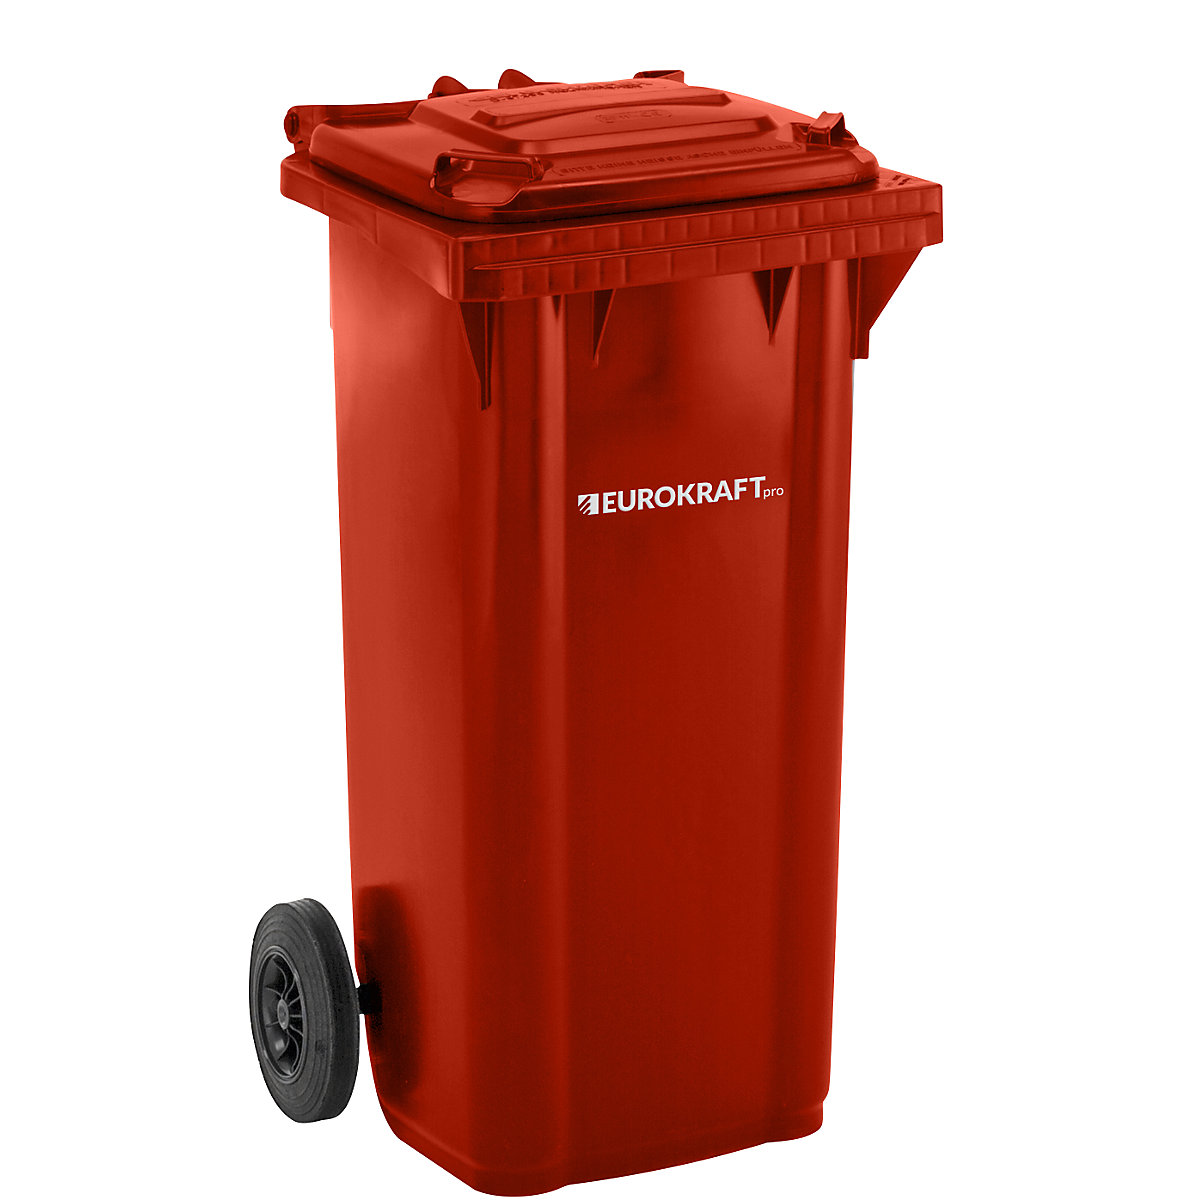 DIN EN 840 szabvány szerinti hulladékgyűjtő – eurokraft pro